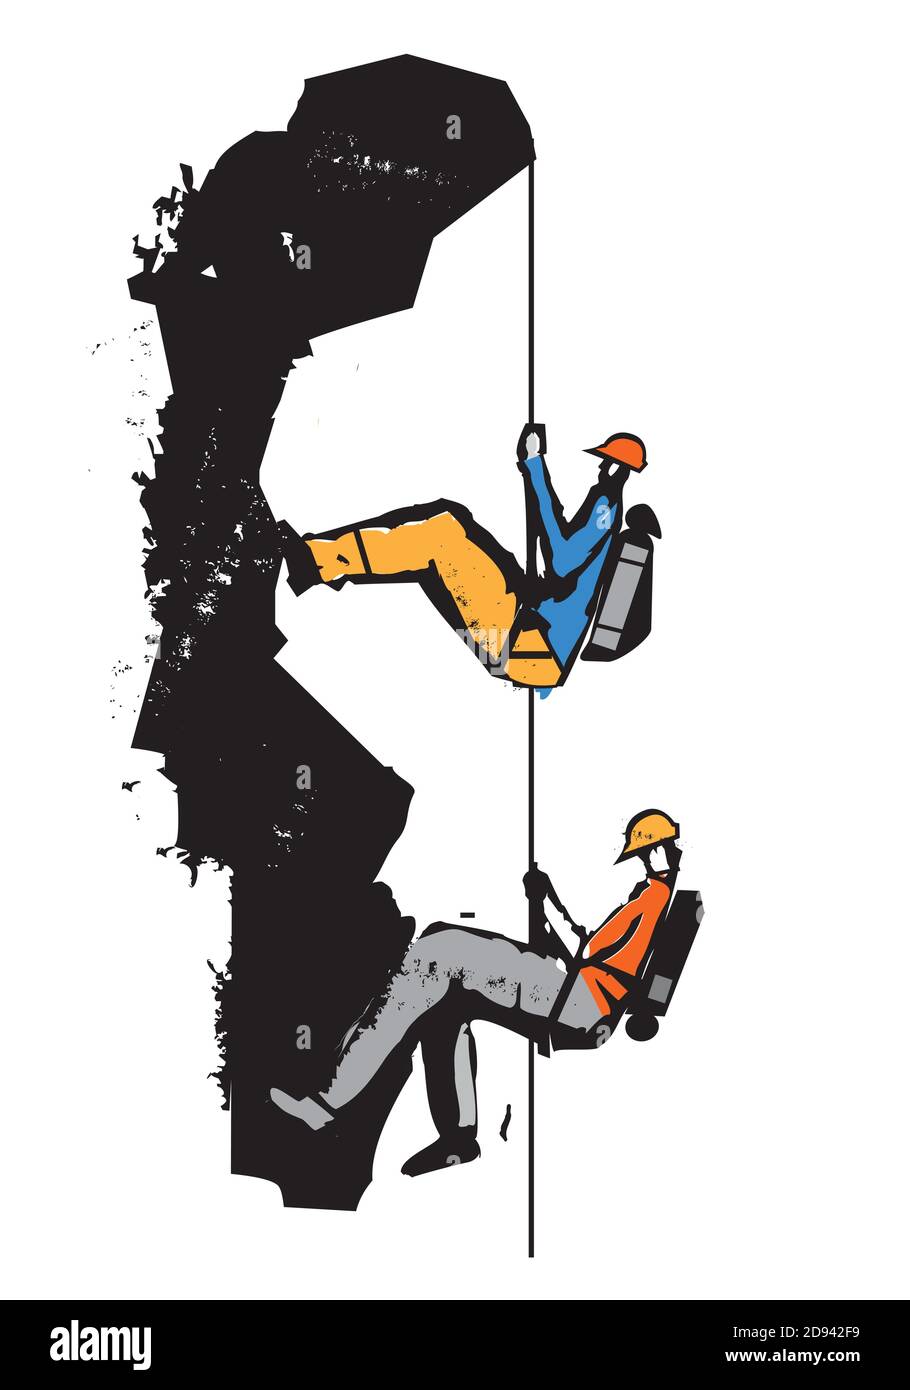 Due arrampicatori su una corda, cartone animato. Illustrazione degli arrampicatori nelle rocce. Grunge Illustrazione stilizzata che imita il linocut. Vettore disponibile. Illustrazione Vettoriale